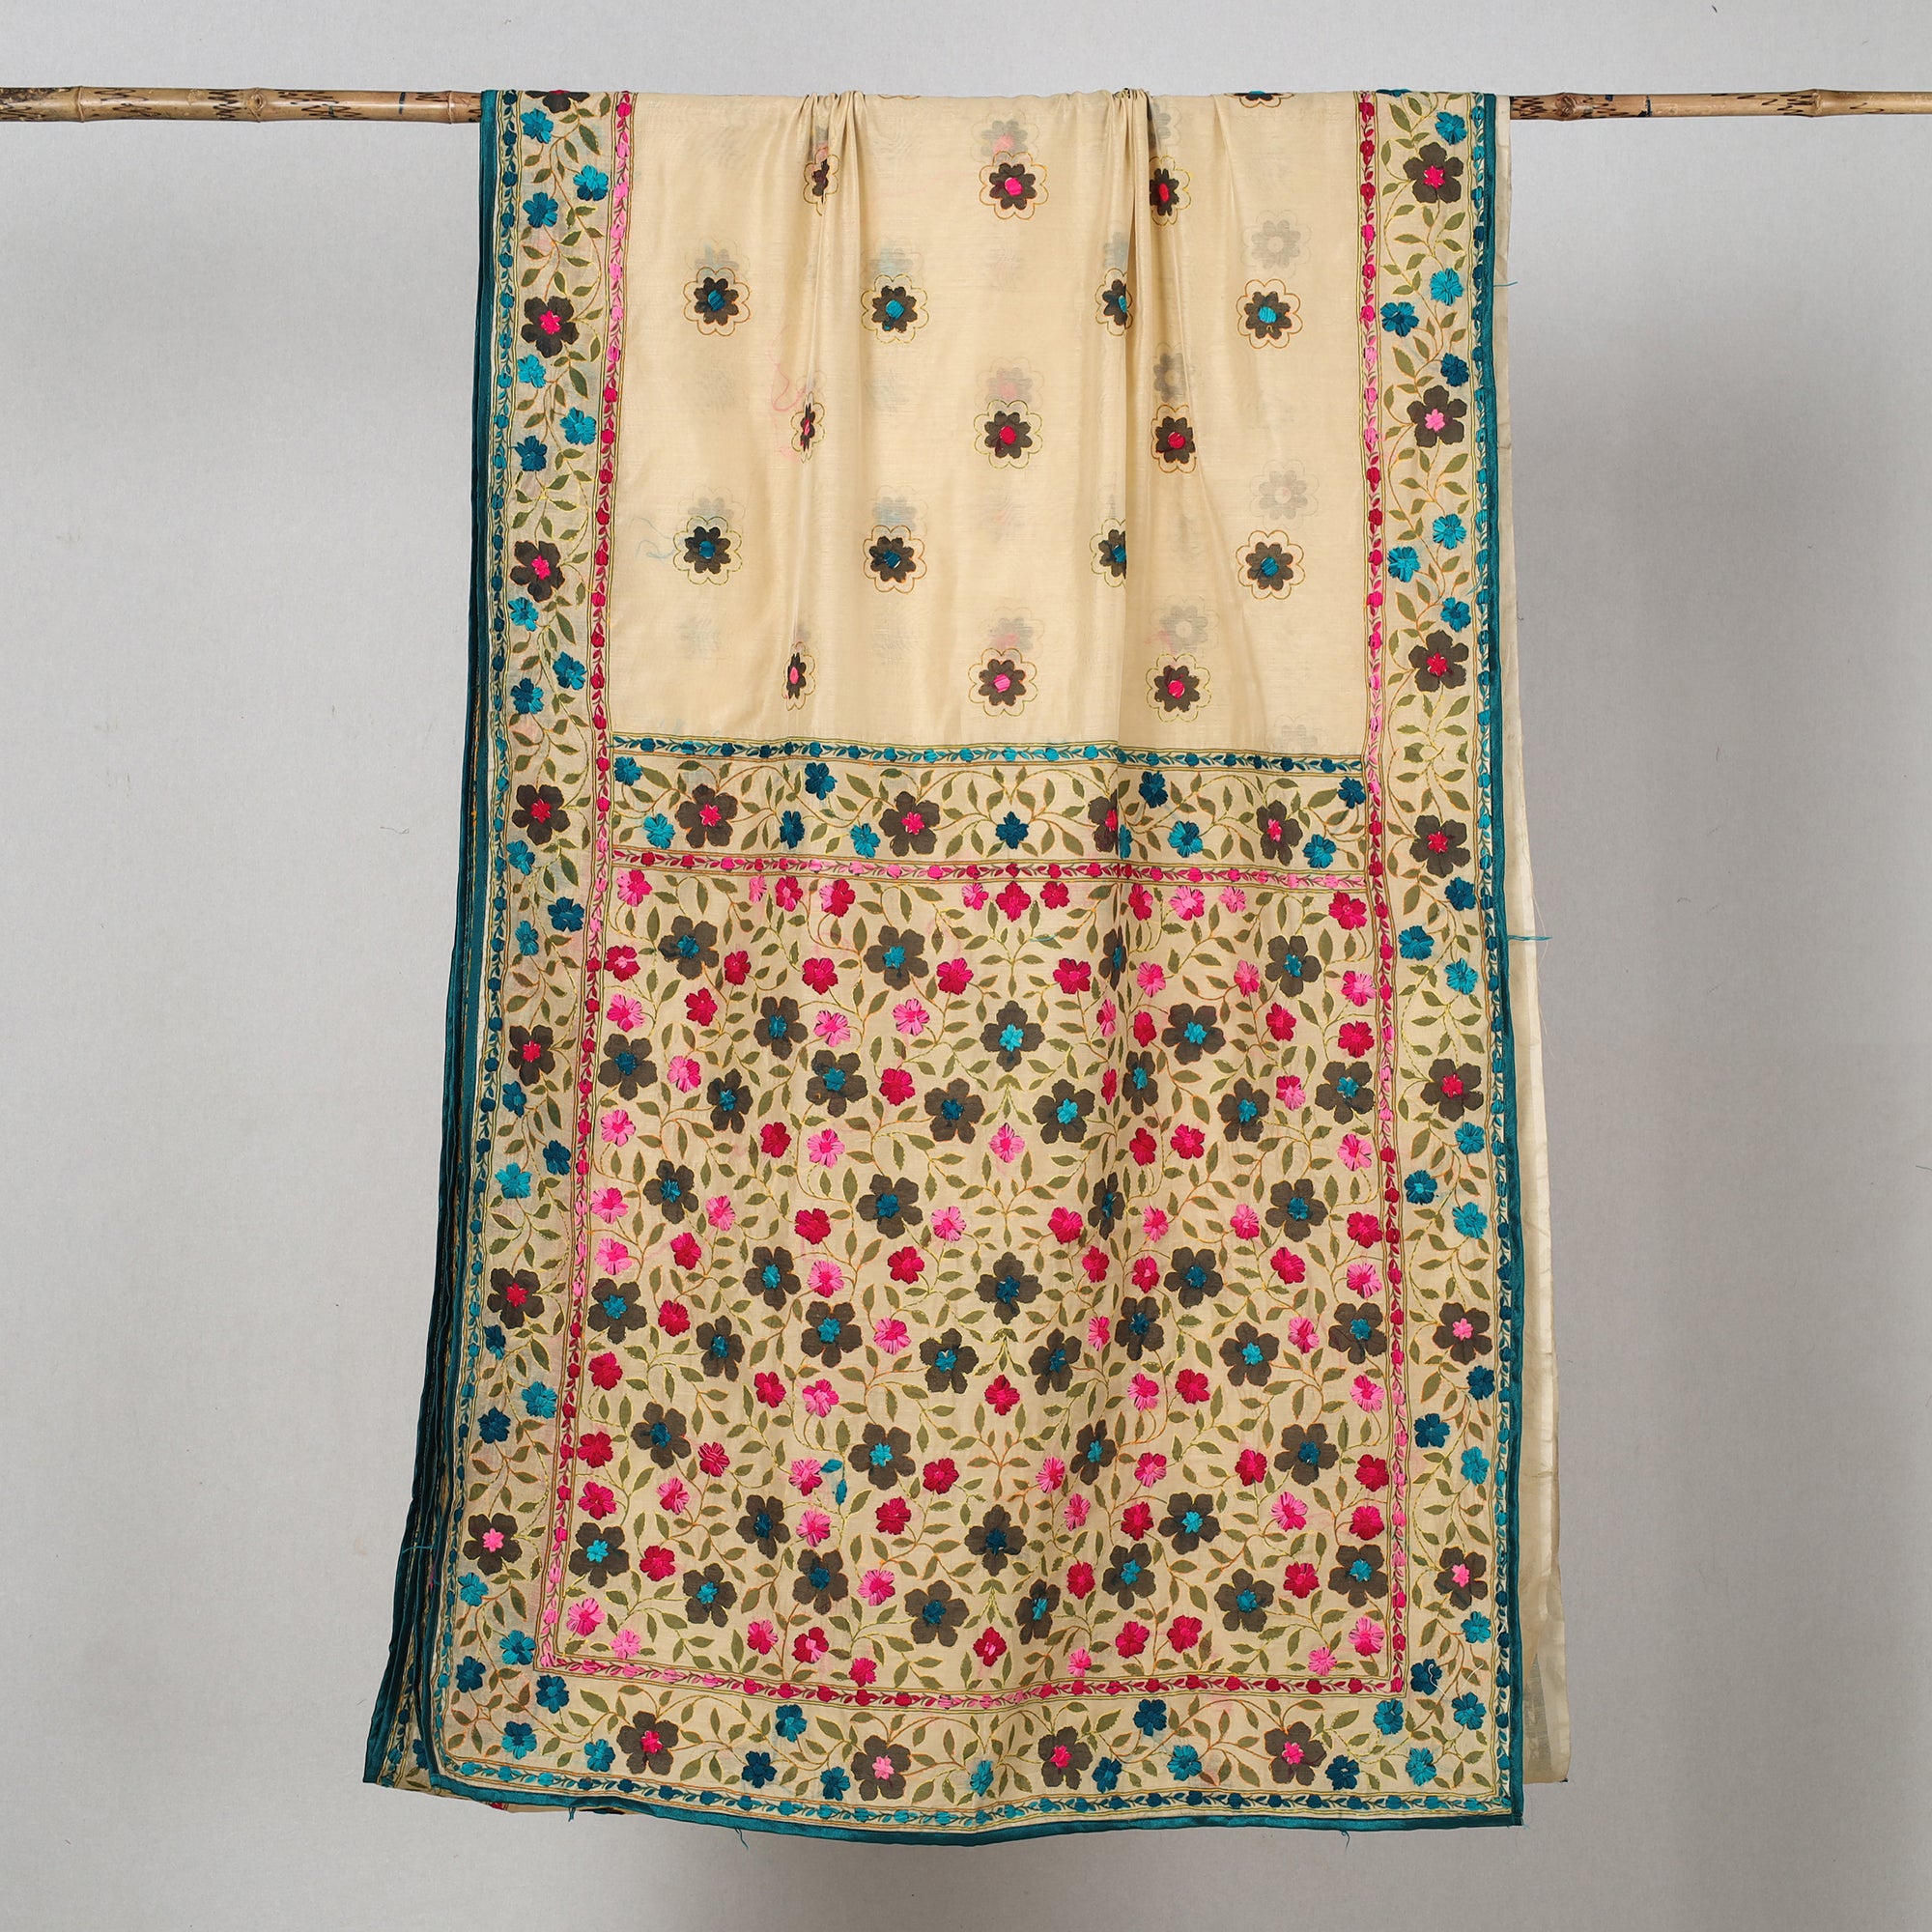 Phulkari in kota silk | Phulkari saree, Saree models, Dress design patterns